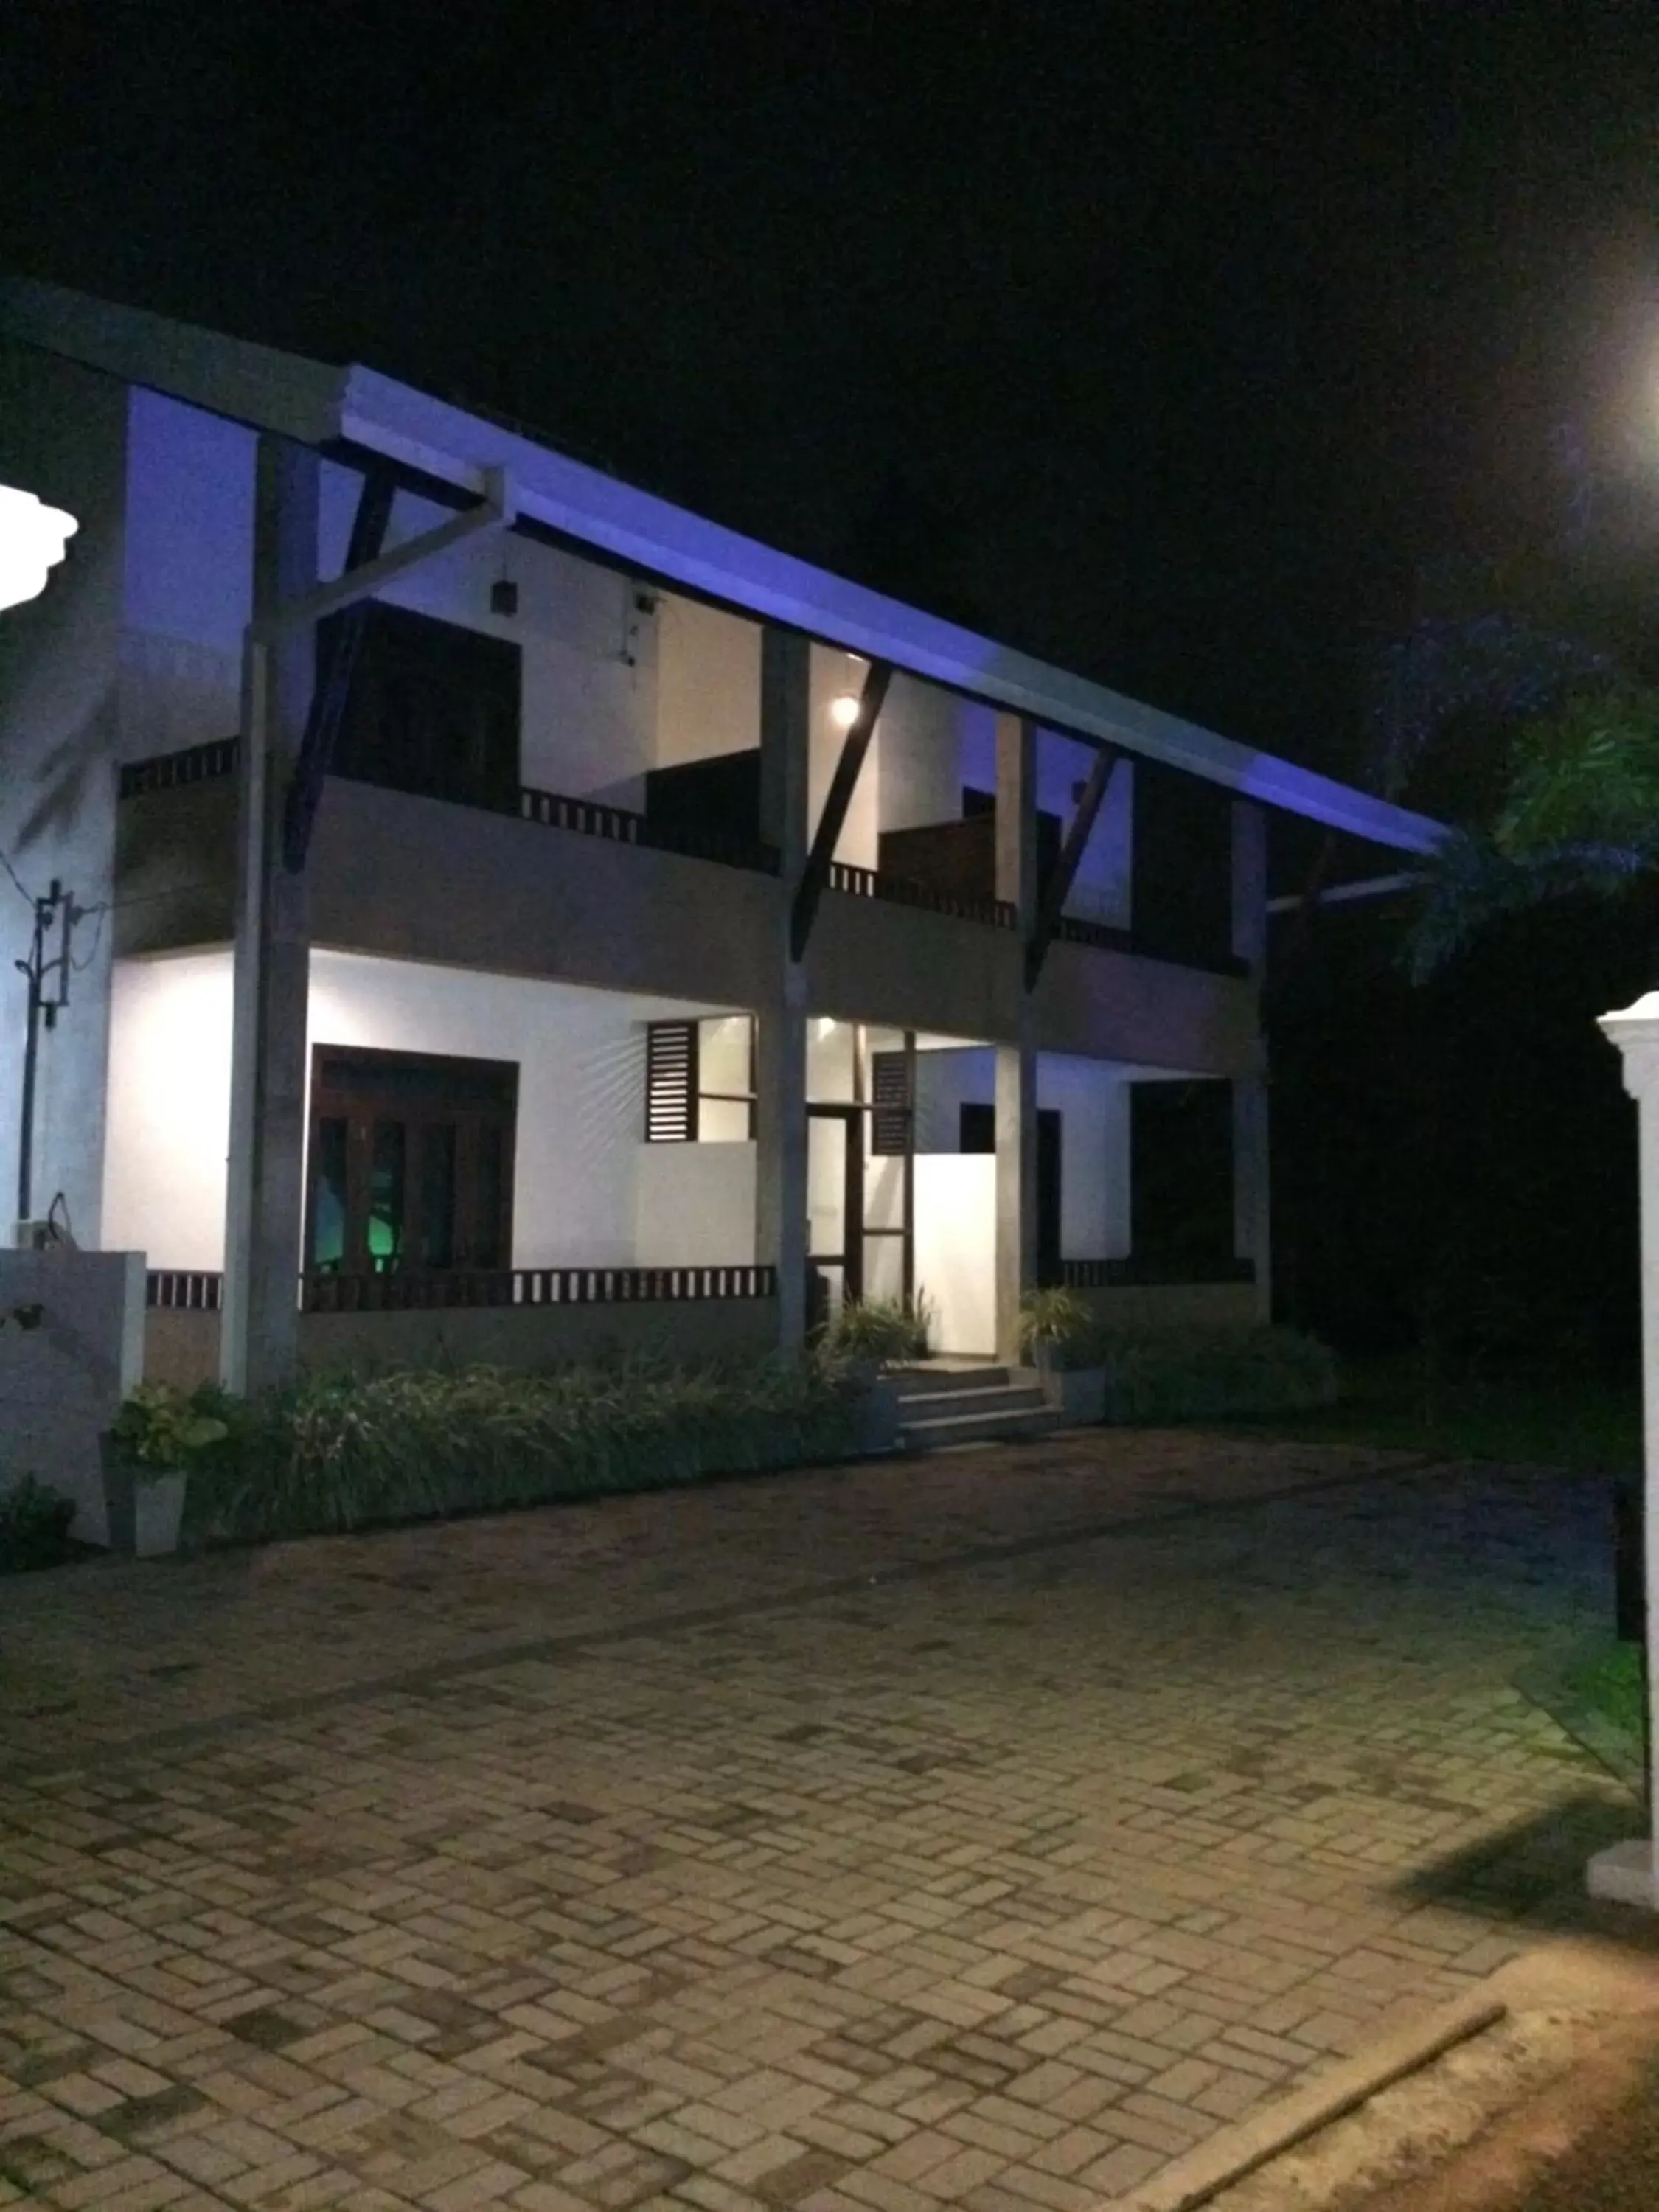 Property Building in Sunrise Palace Negombo